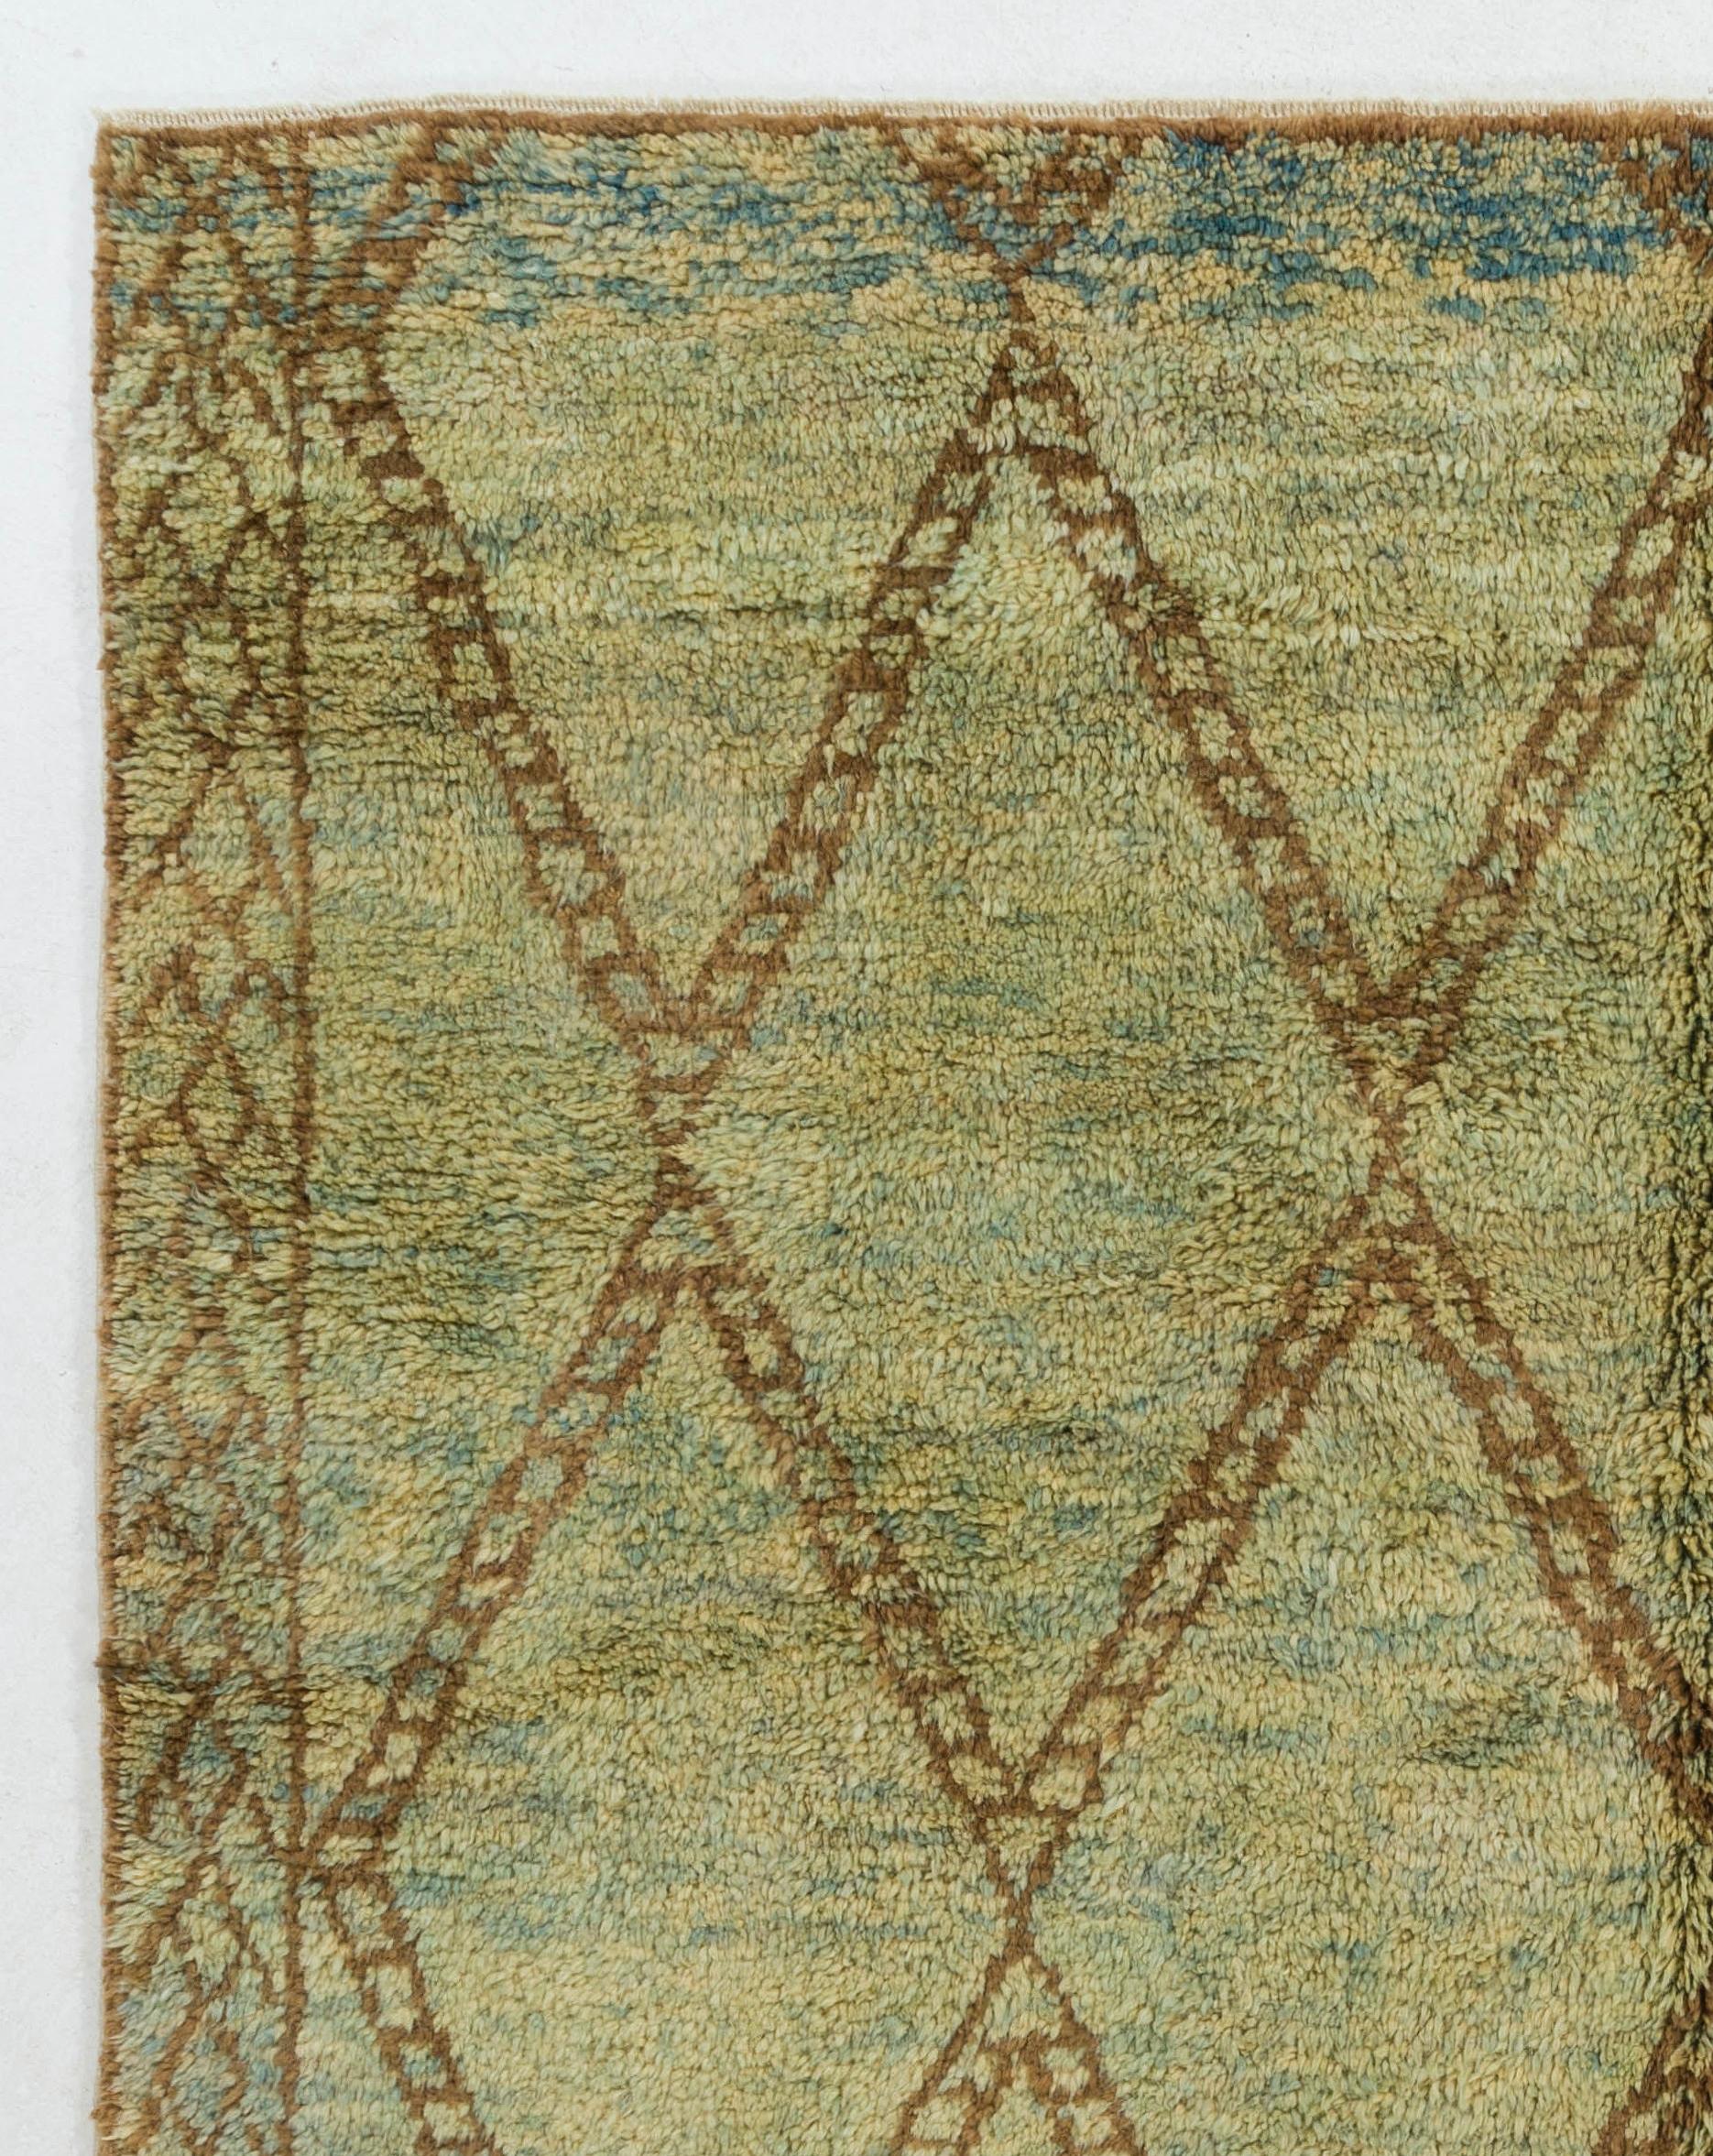 Ein zeitgenössischer handgeknüpfter Teppich im marokkanischen Berber-Design aus organischer Wolle in einer raffinierten, warmen und erdigen Farbpalette aus Olivgrün, Braun und Hellblau. Es weist ein Allover-Muster aus rautenförmigen, breitkantigen